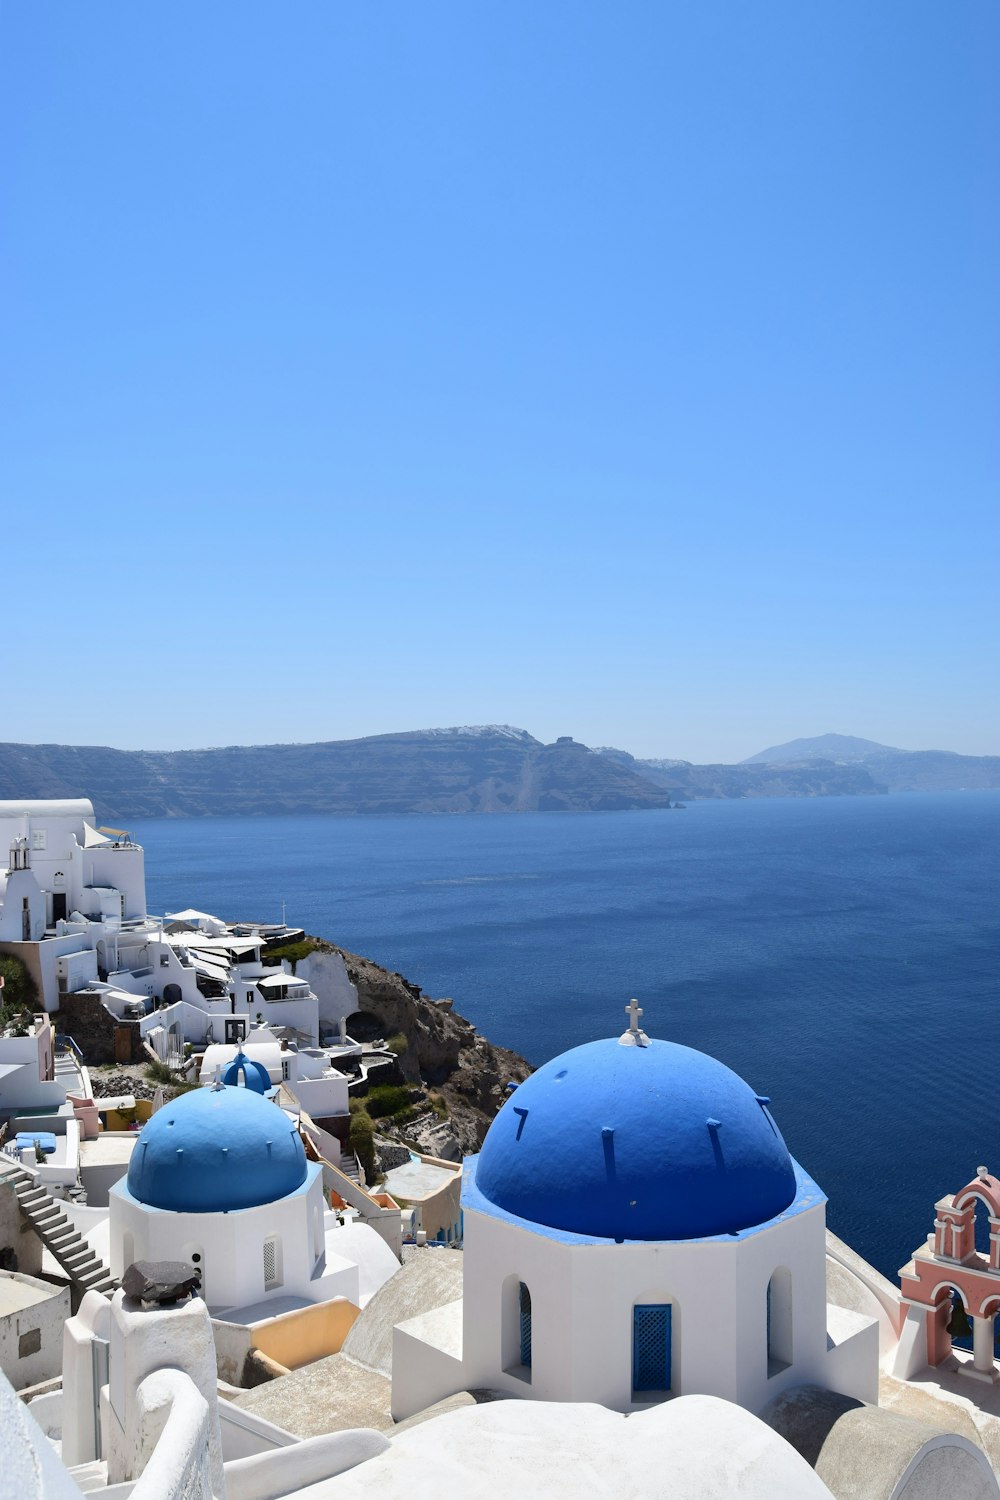 Edificios de cúpula azul en Santorini, Grecia durante el día